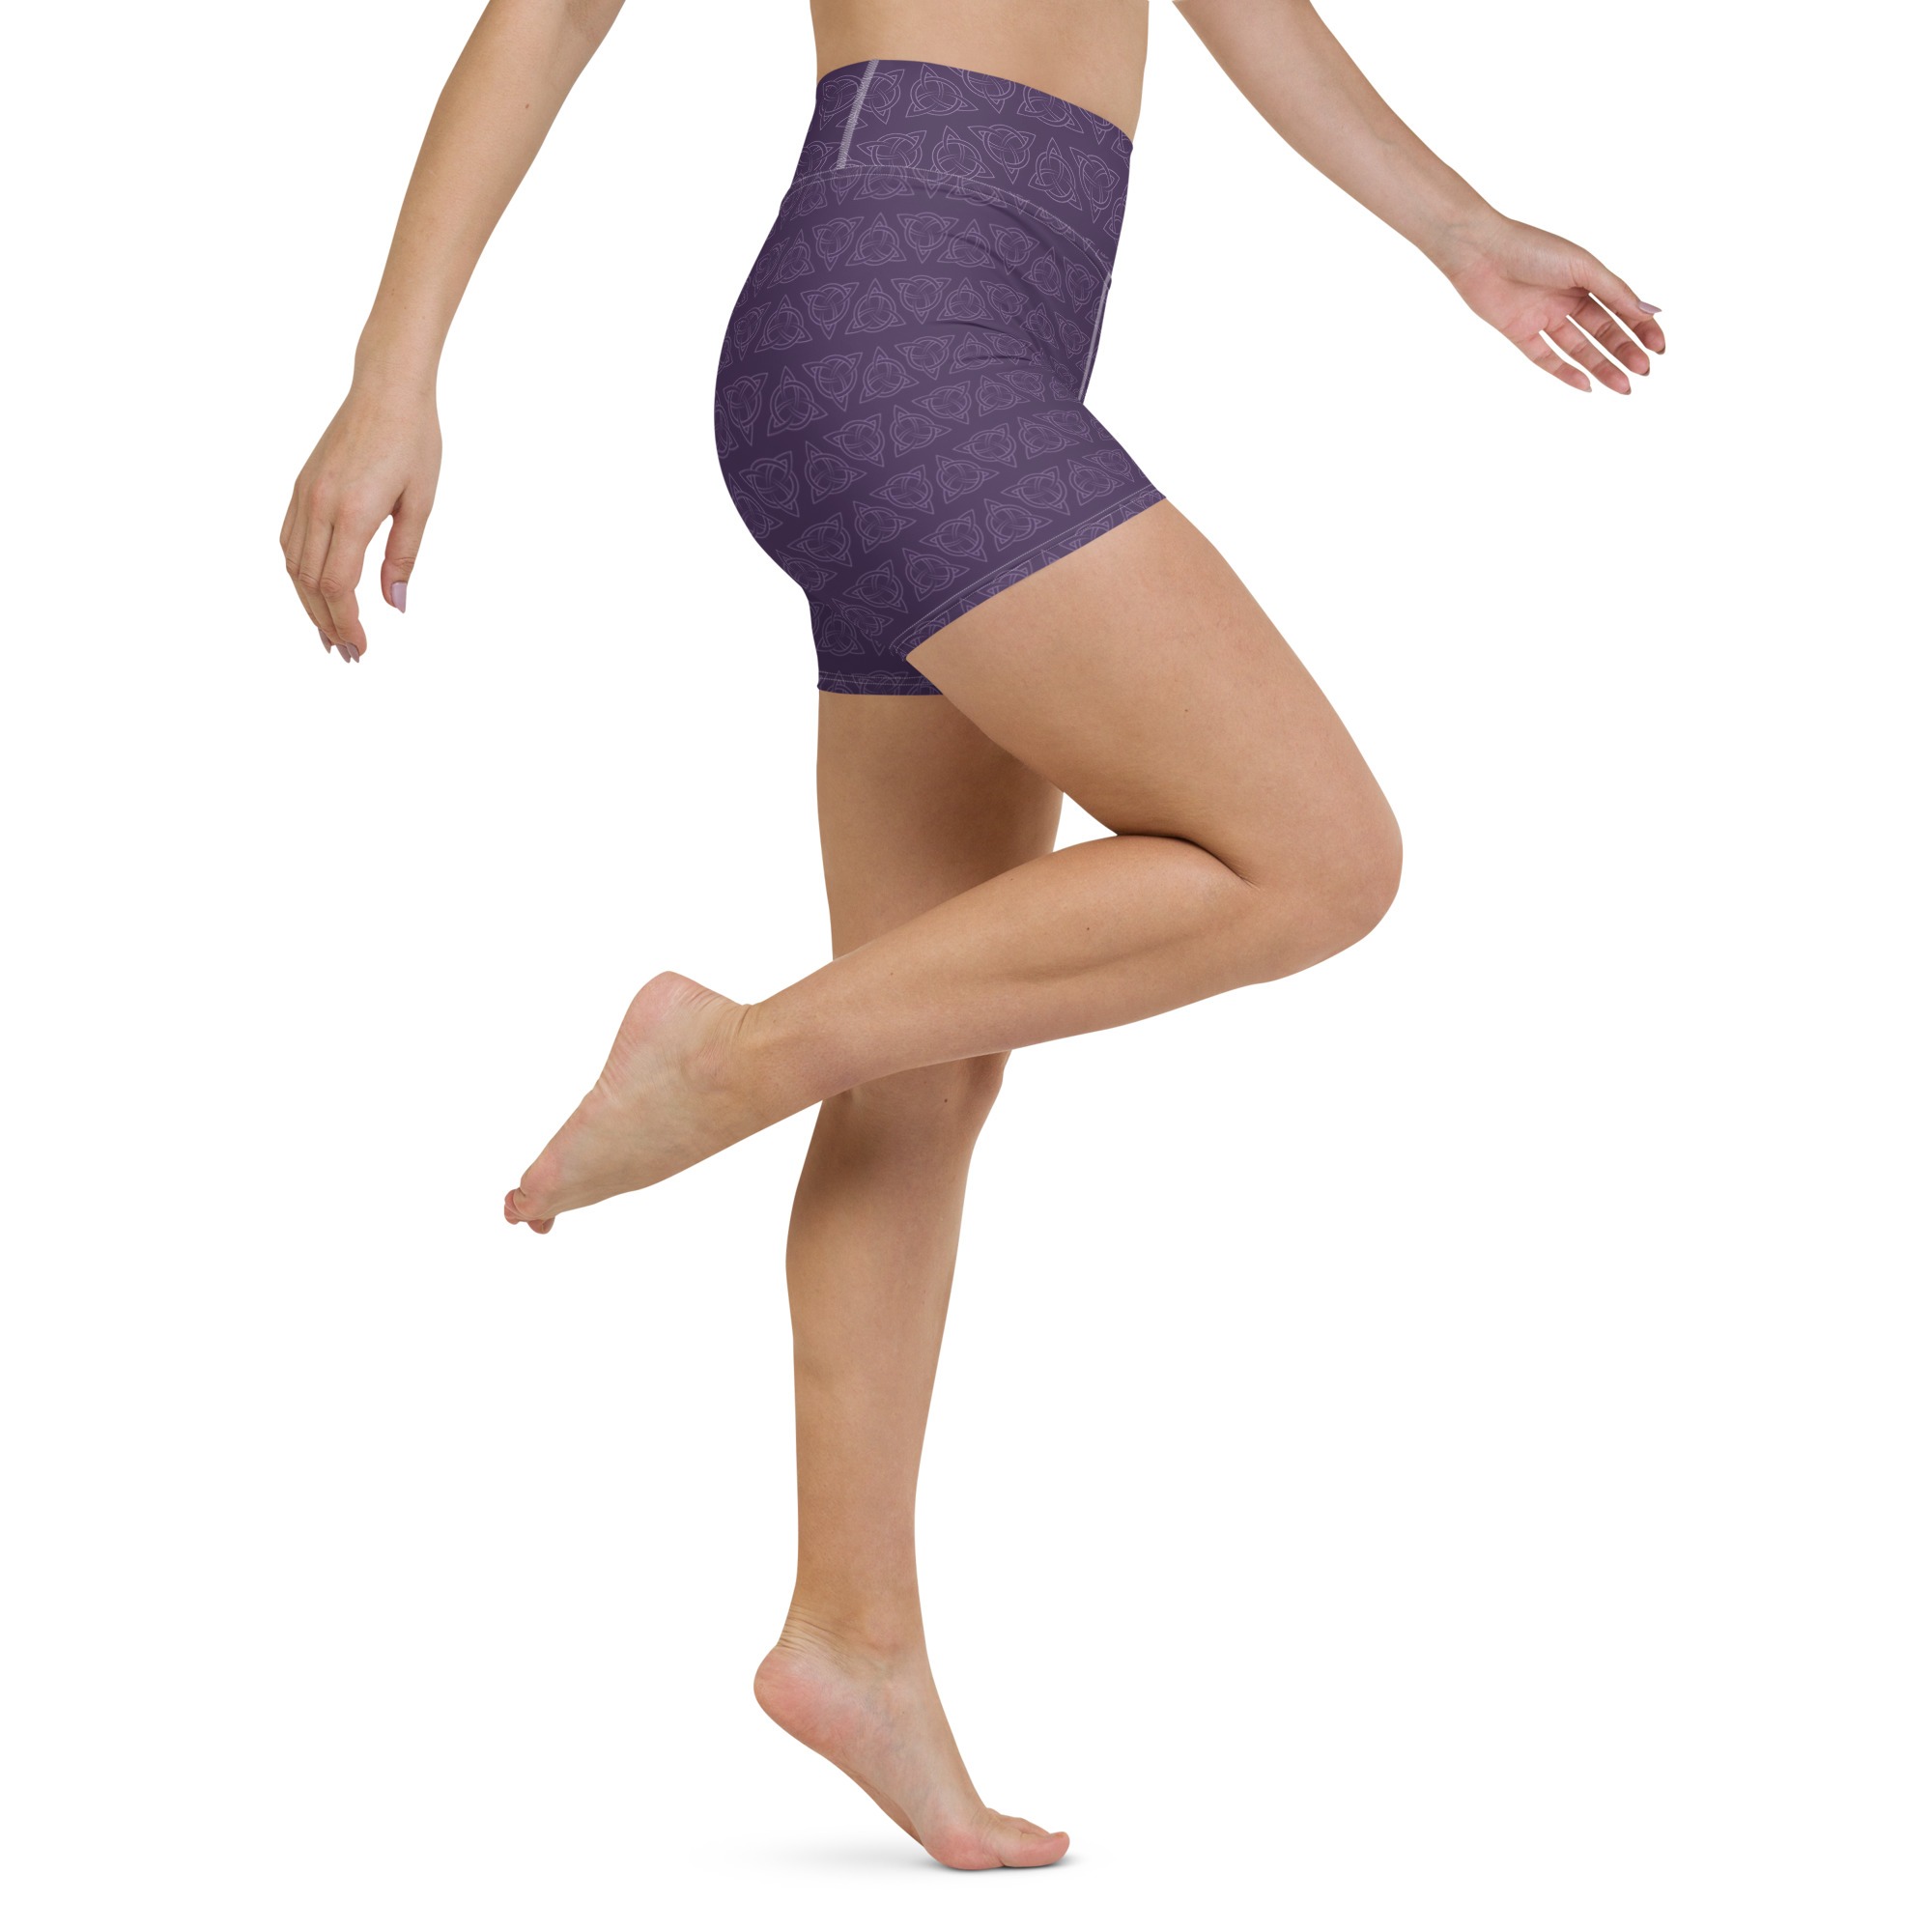 Purple Celtic Triquetra Yoga Shorts